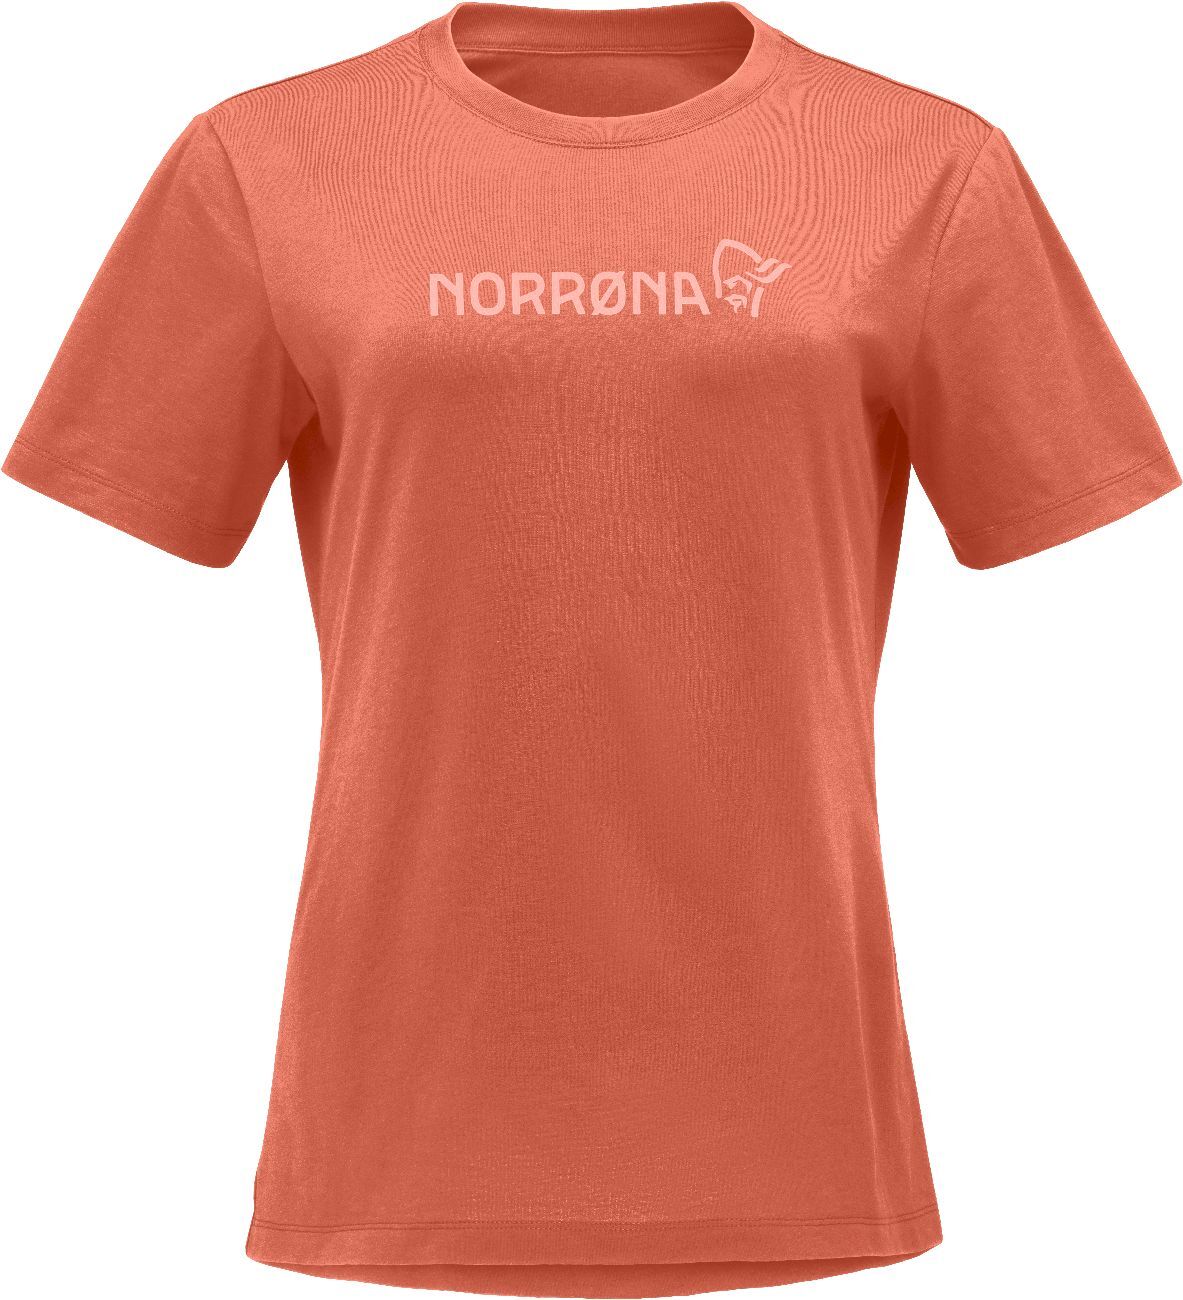 Norrona /29 Cotton Norrona Viking - T-paita - Naiset